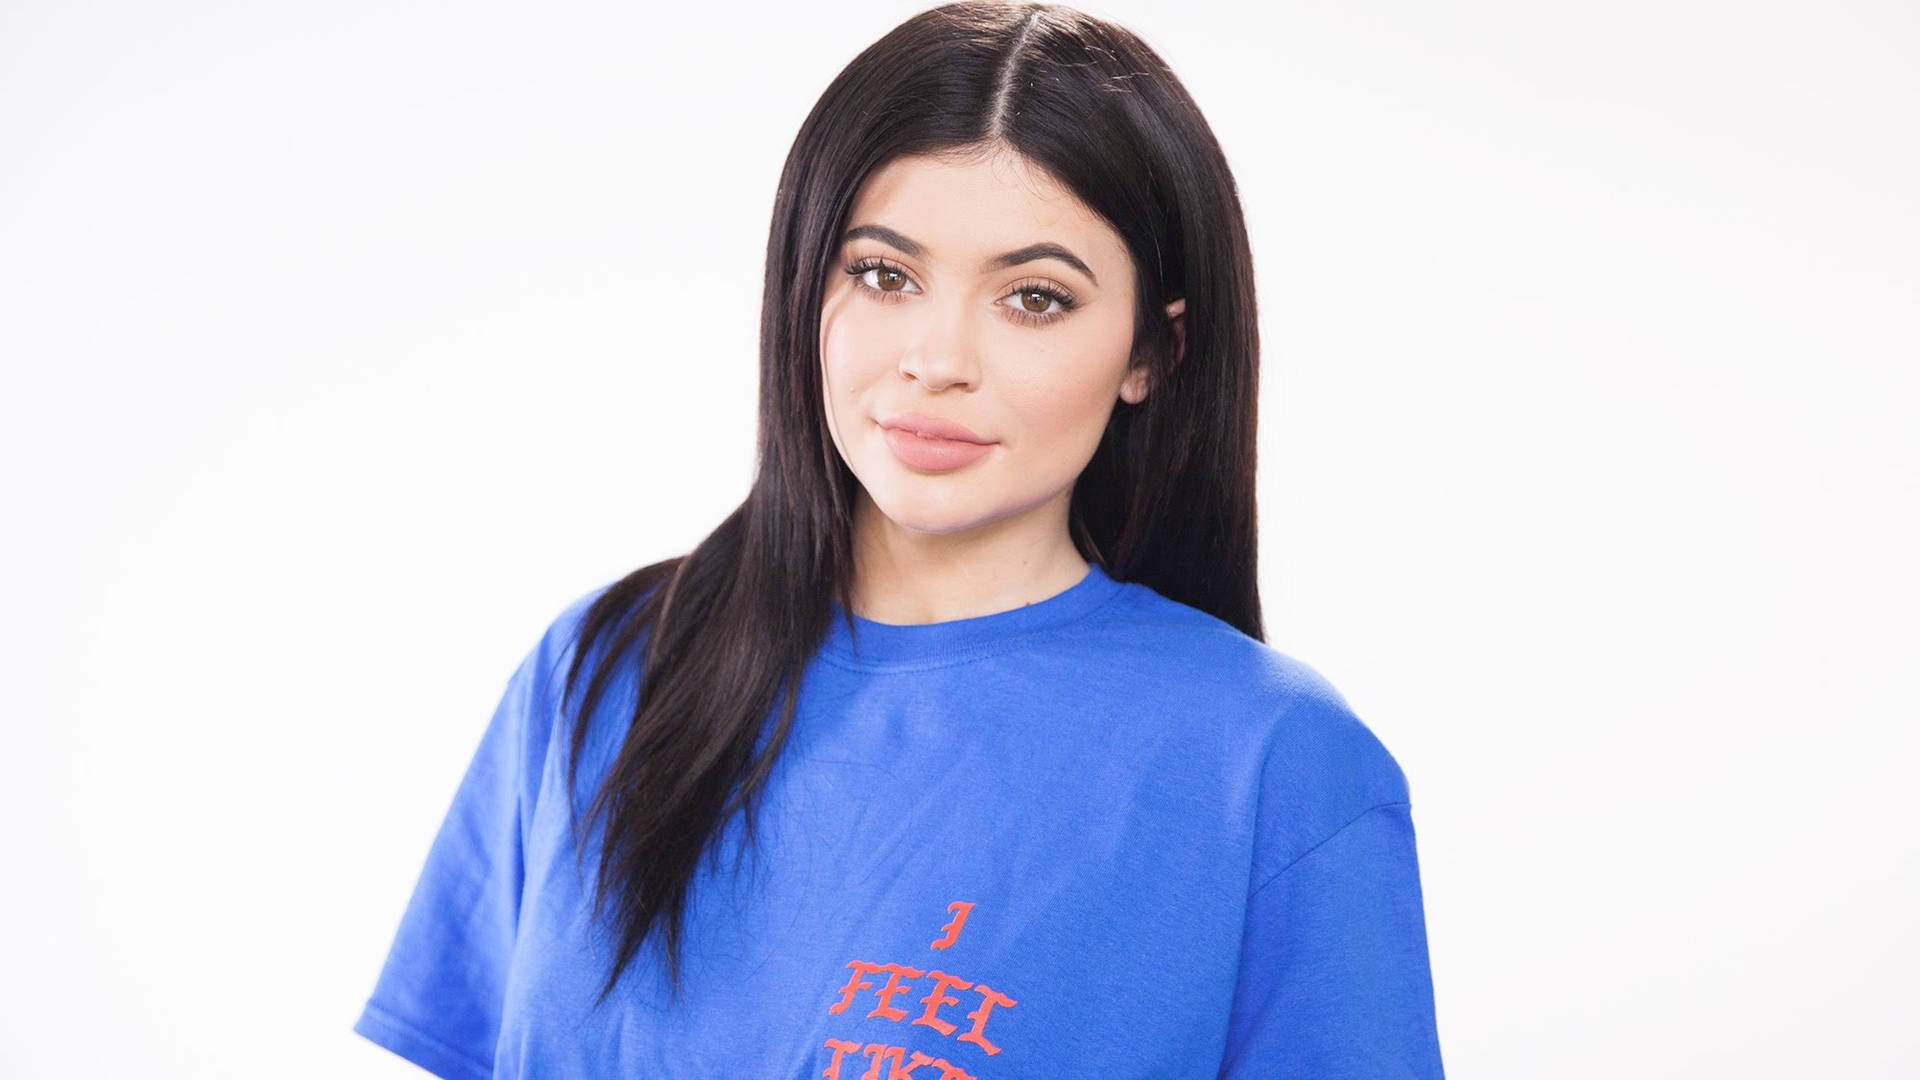 Kylie Jenner Wearing Blue Shirt